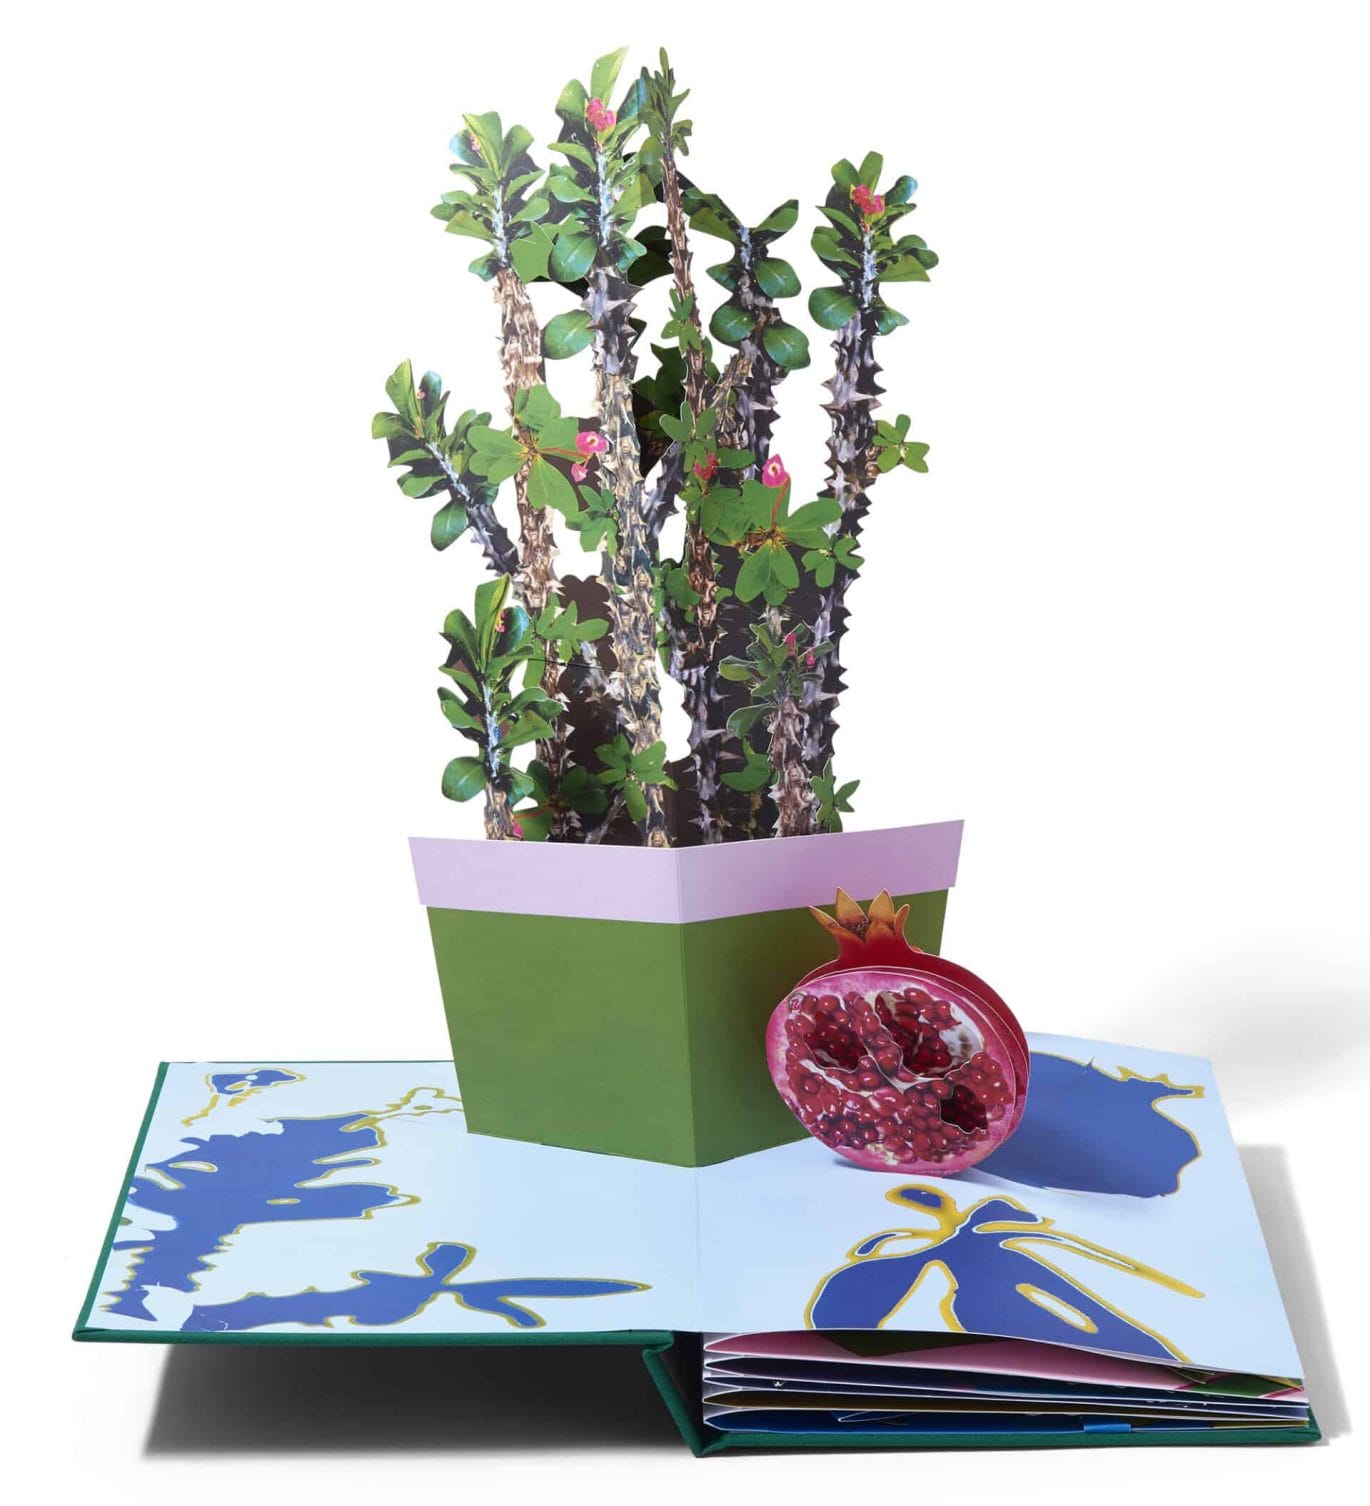 Pop-up boek met populaire kamerplanten